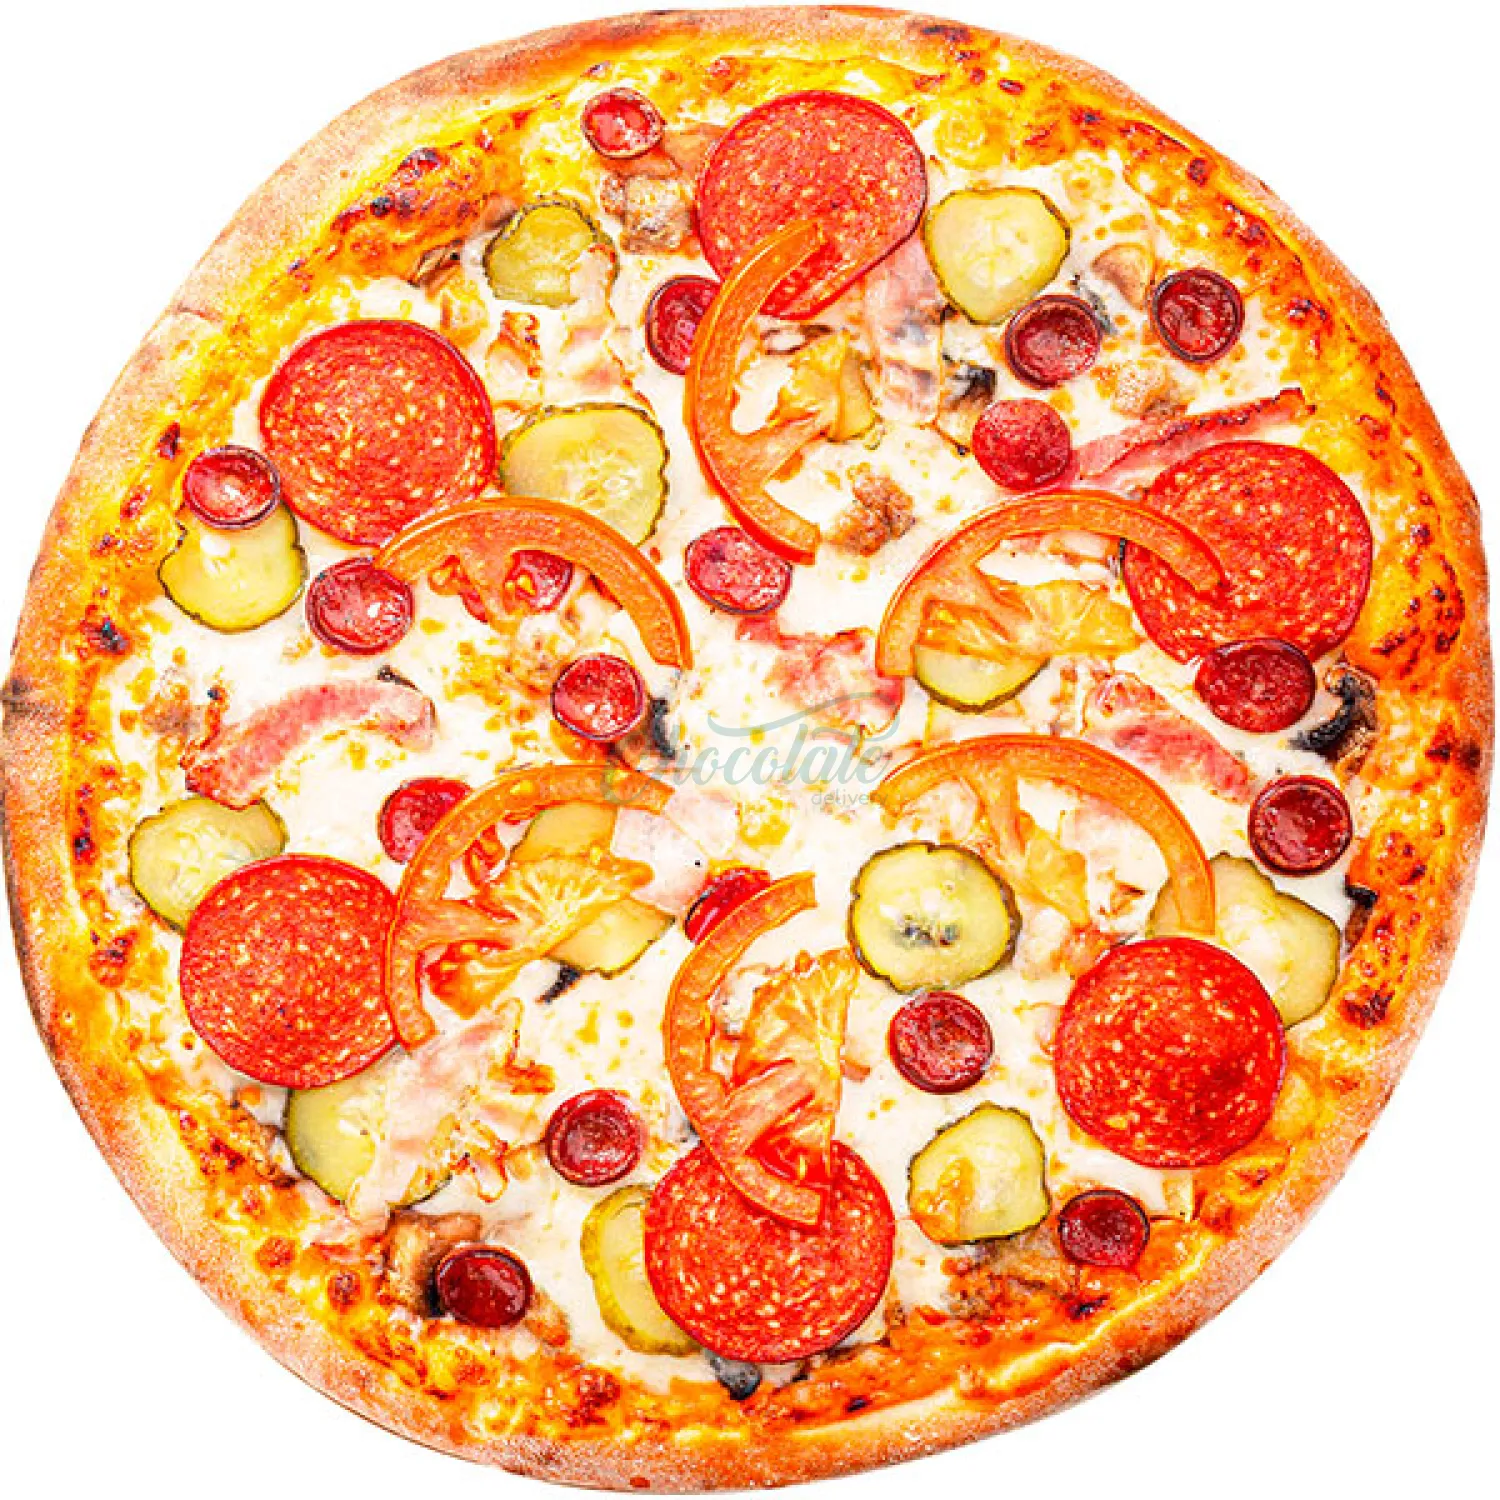 волжский пицца ассортимент фото 118